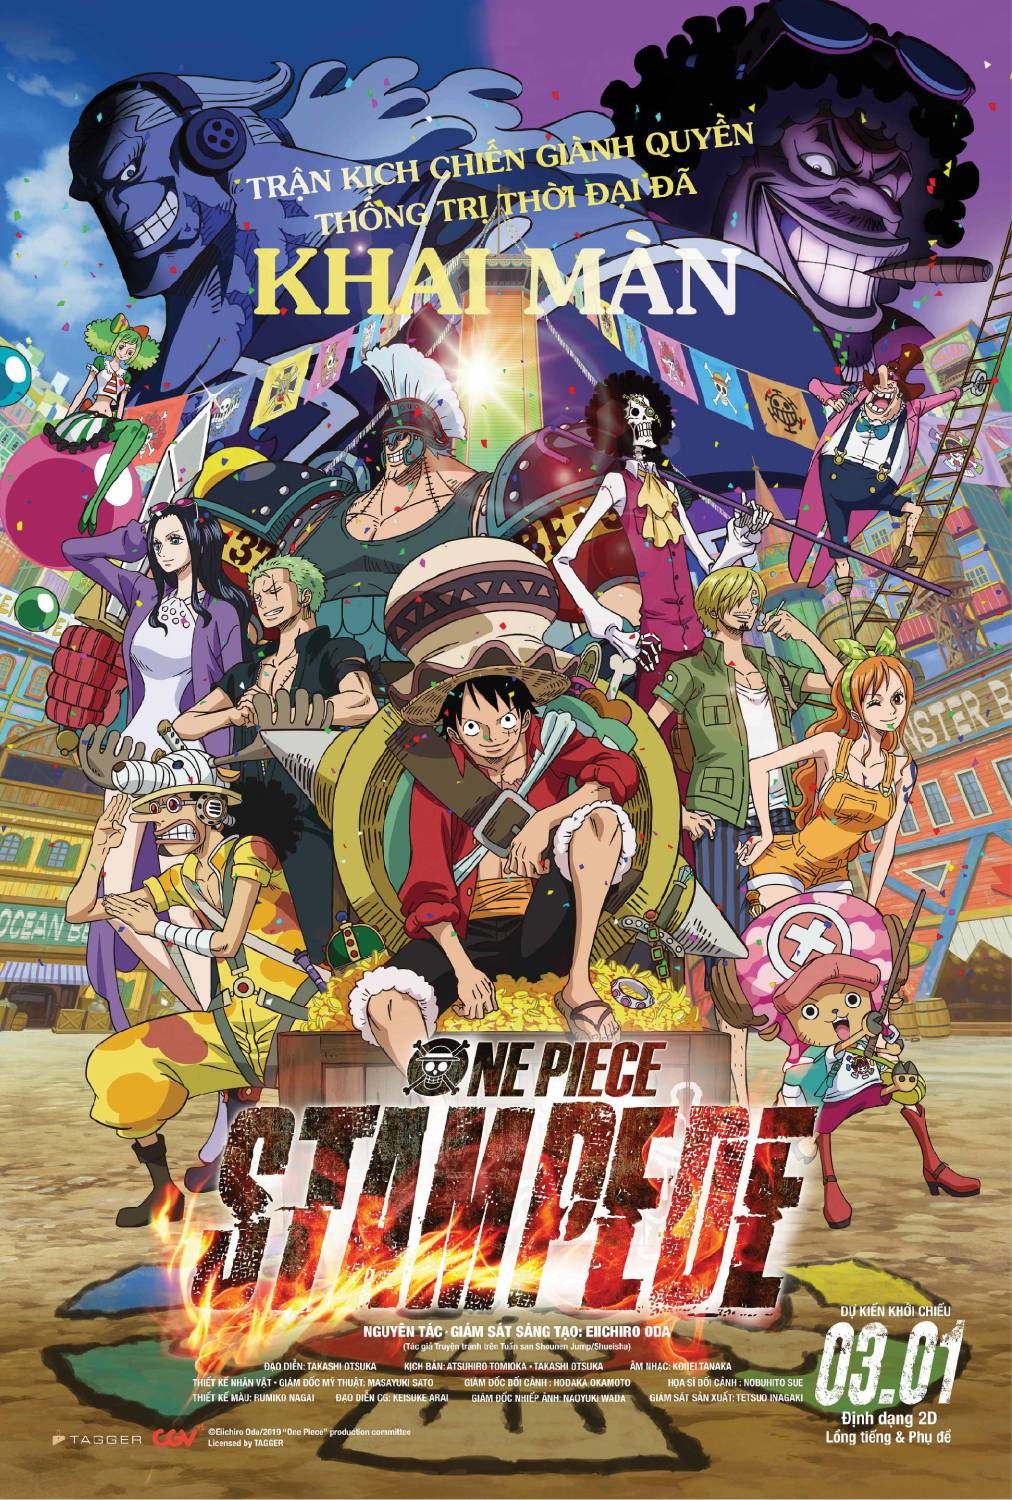 Bạn đã sẵn sàng cho Lễ hội Hải Tặc One Piece sắp tới chưa? Hãy cùng chúng tôi tận hưởng câu chuyện của bộ phim và chia sẻ cùng bạn bè nhé!